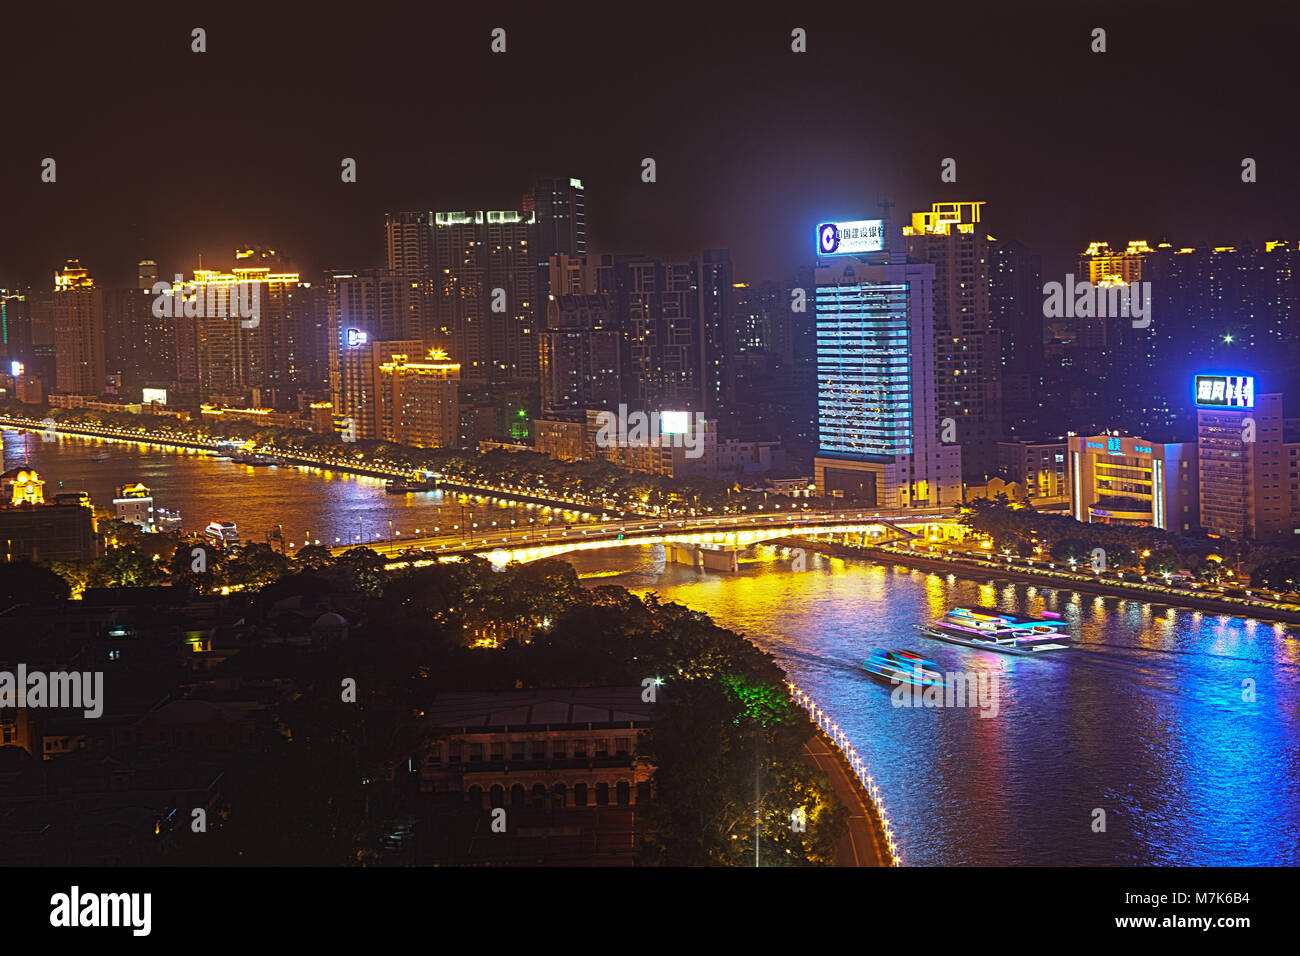 Les navires de croisière dîner sur la rivière Zhujiang dans la nuit du haut de la White Swan Hotel, Guangzhou, province de Guangdong, en République populaire de Chine. Banque D'Images